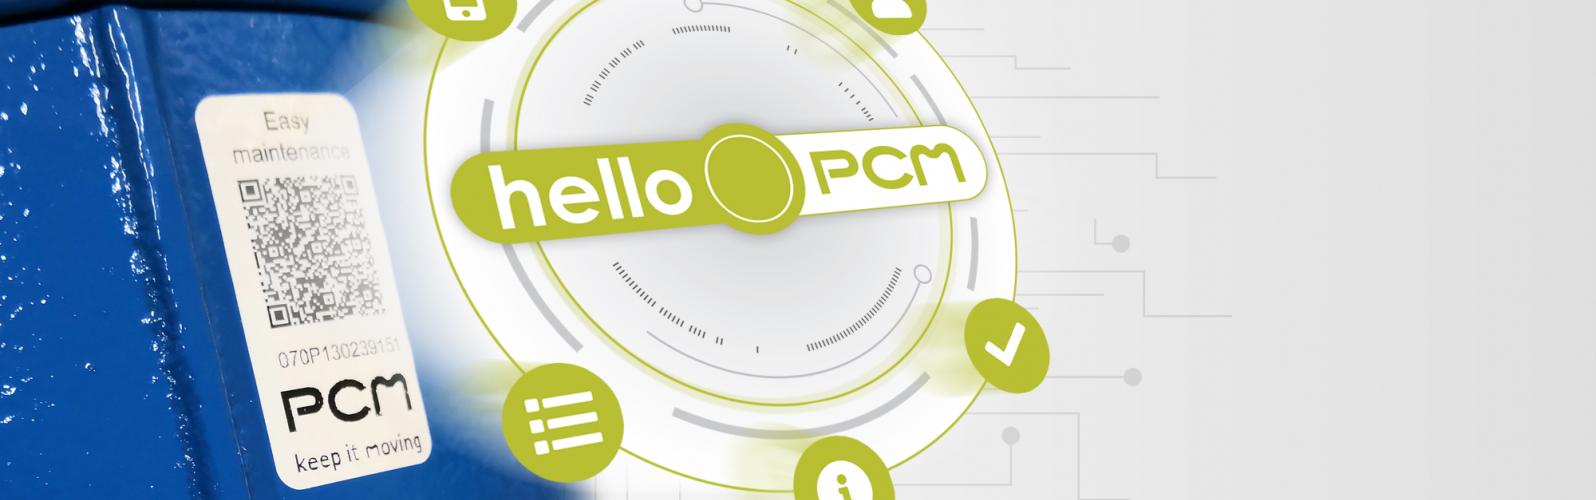 HelloPCM - digitale App